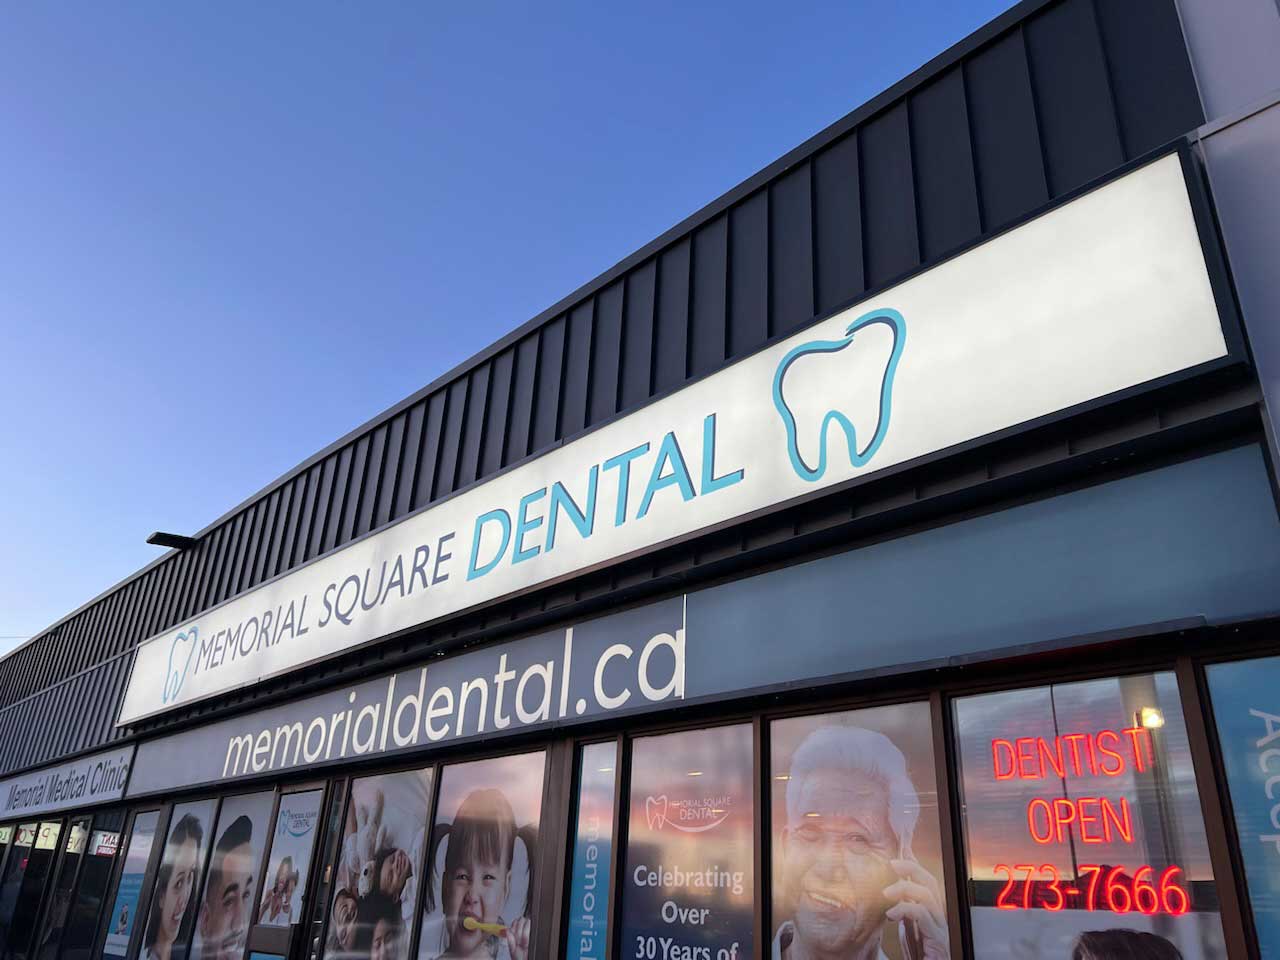 New Memorial Square Dental Signage | Memorial Square Dental | NE Calgary Dentist